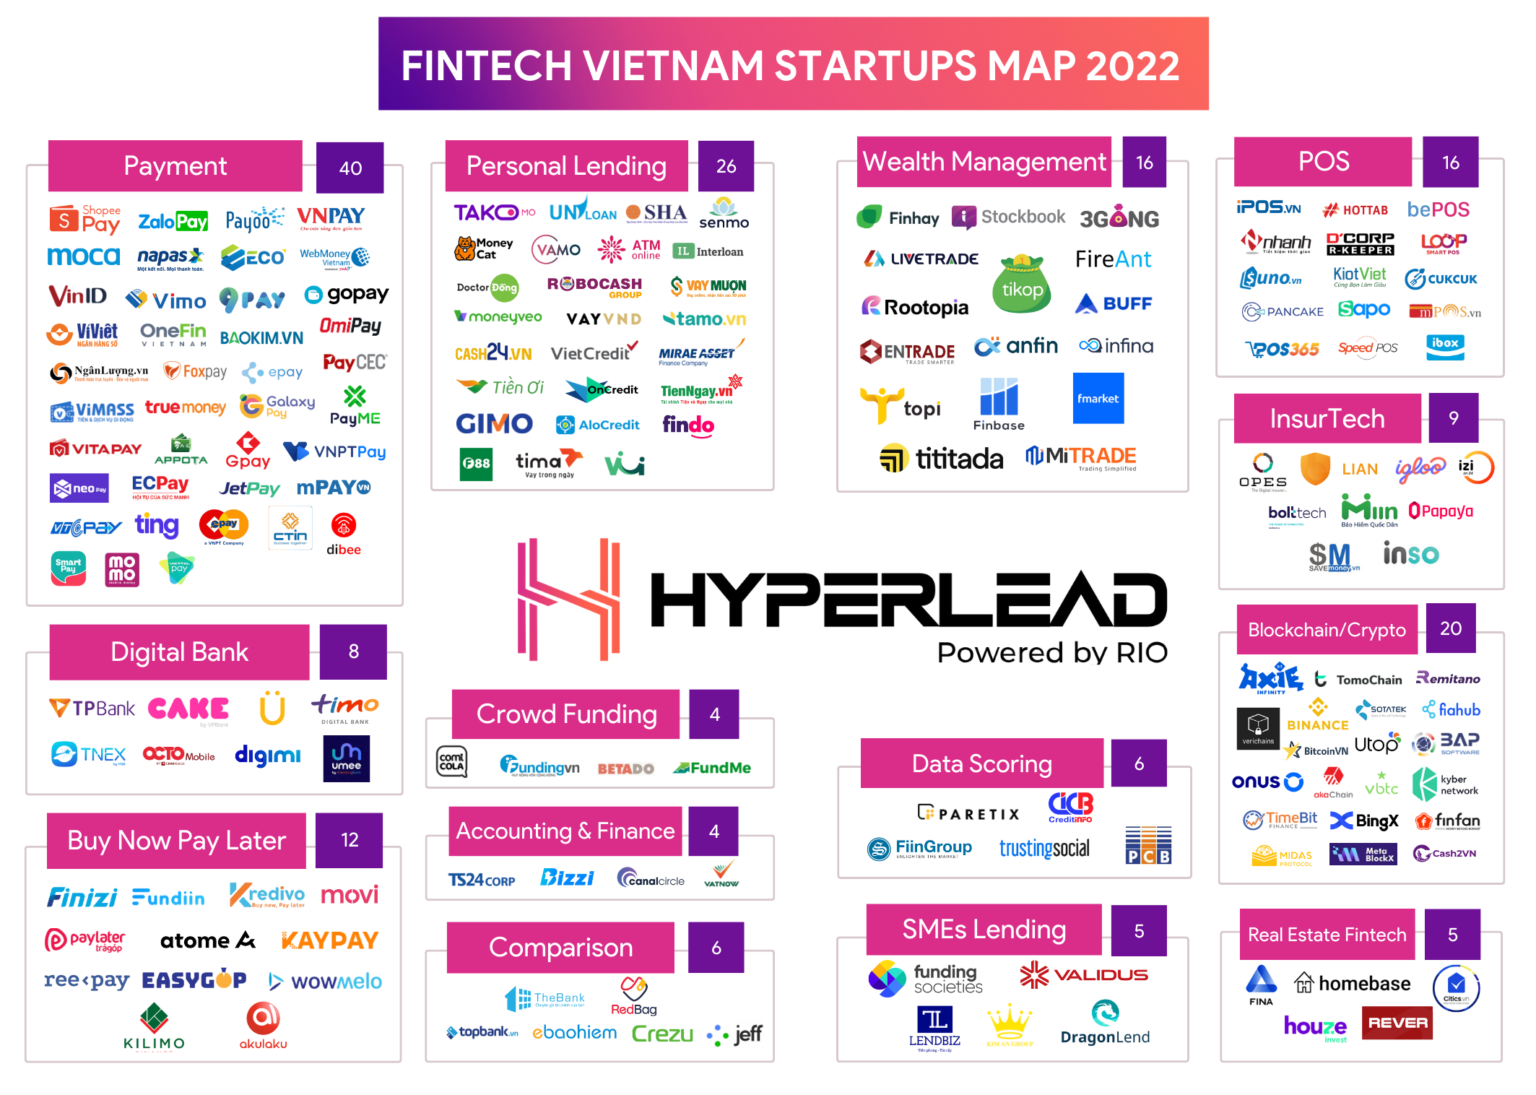 Vietnam fintech startup map 2022, Source: Hyperlead, March 2023